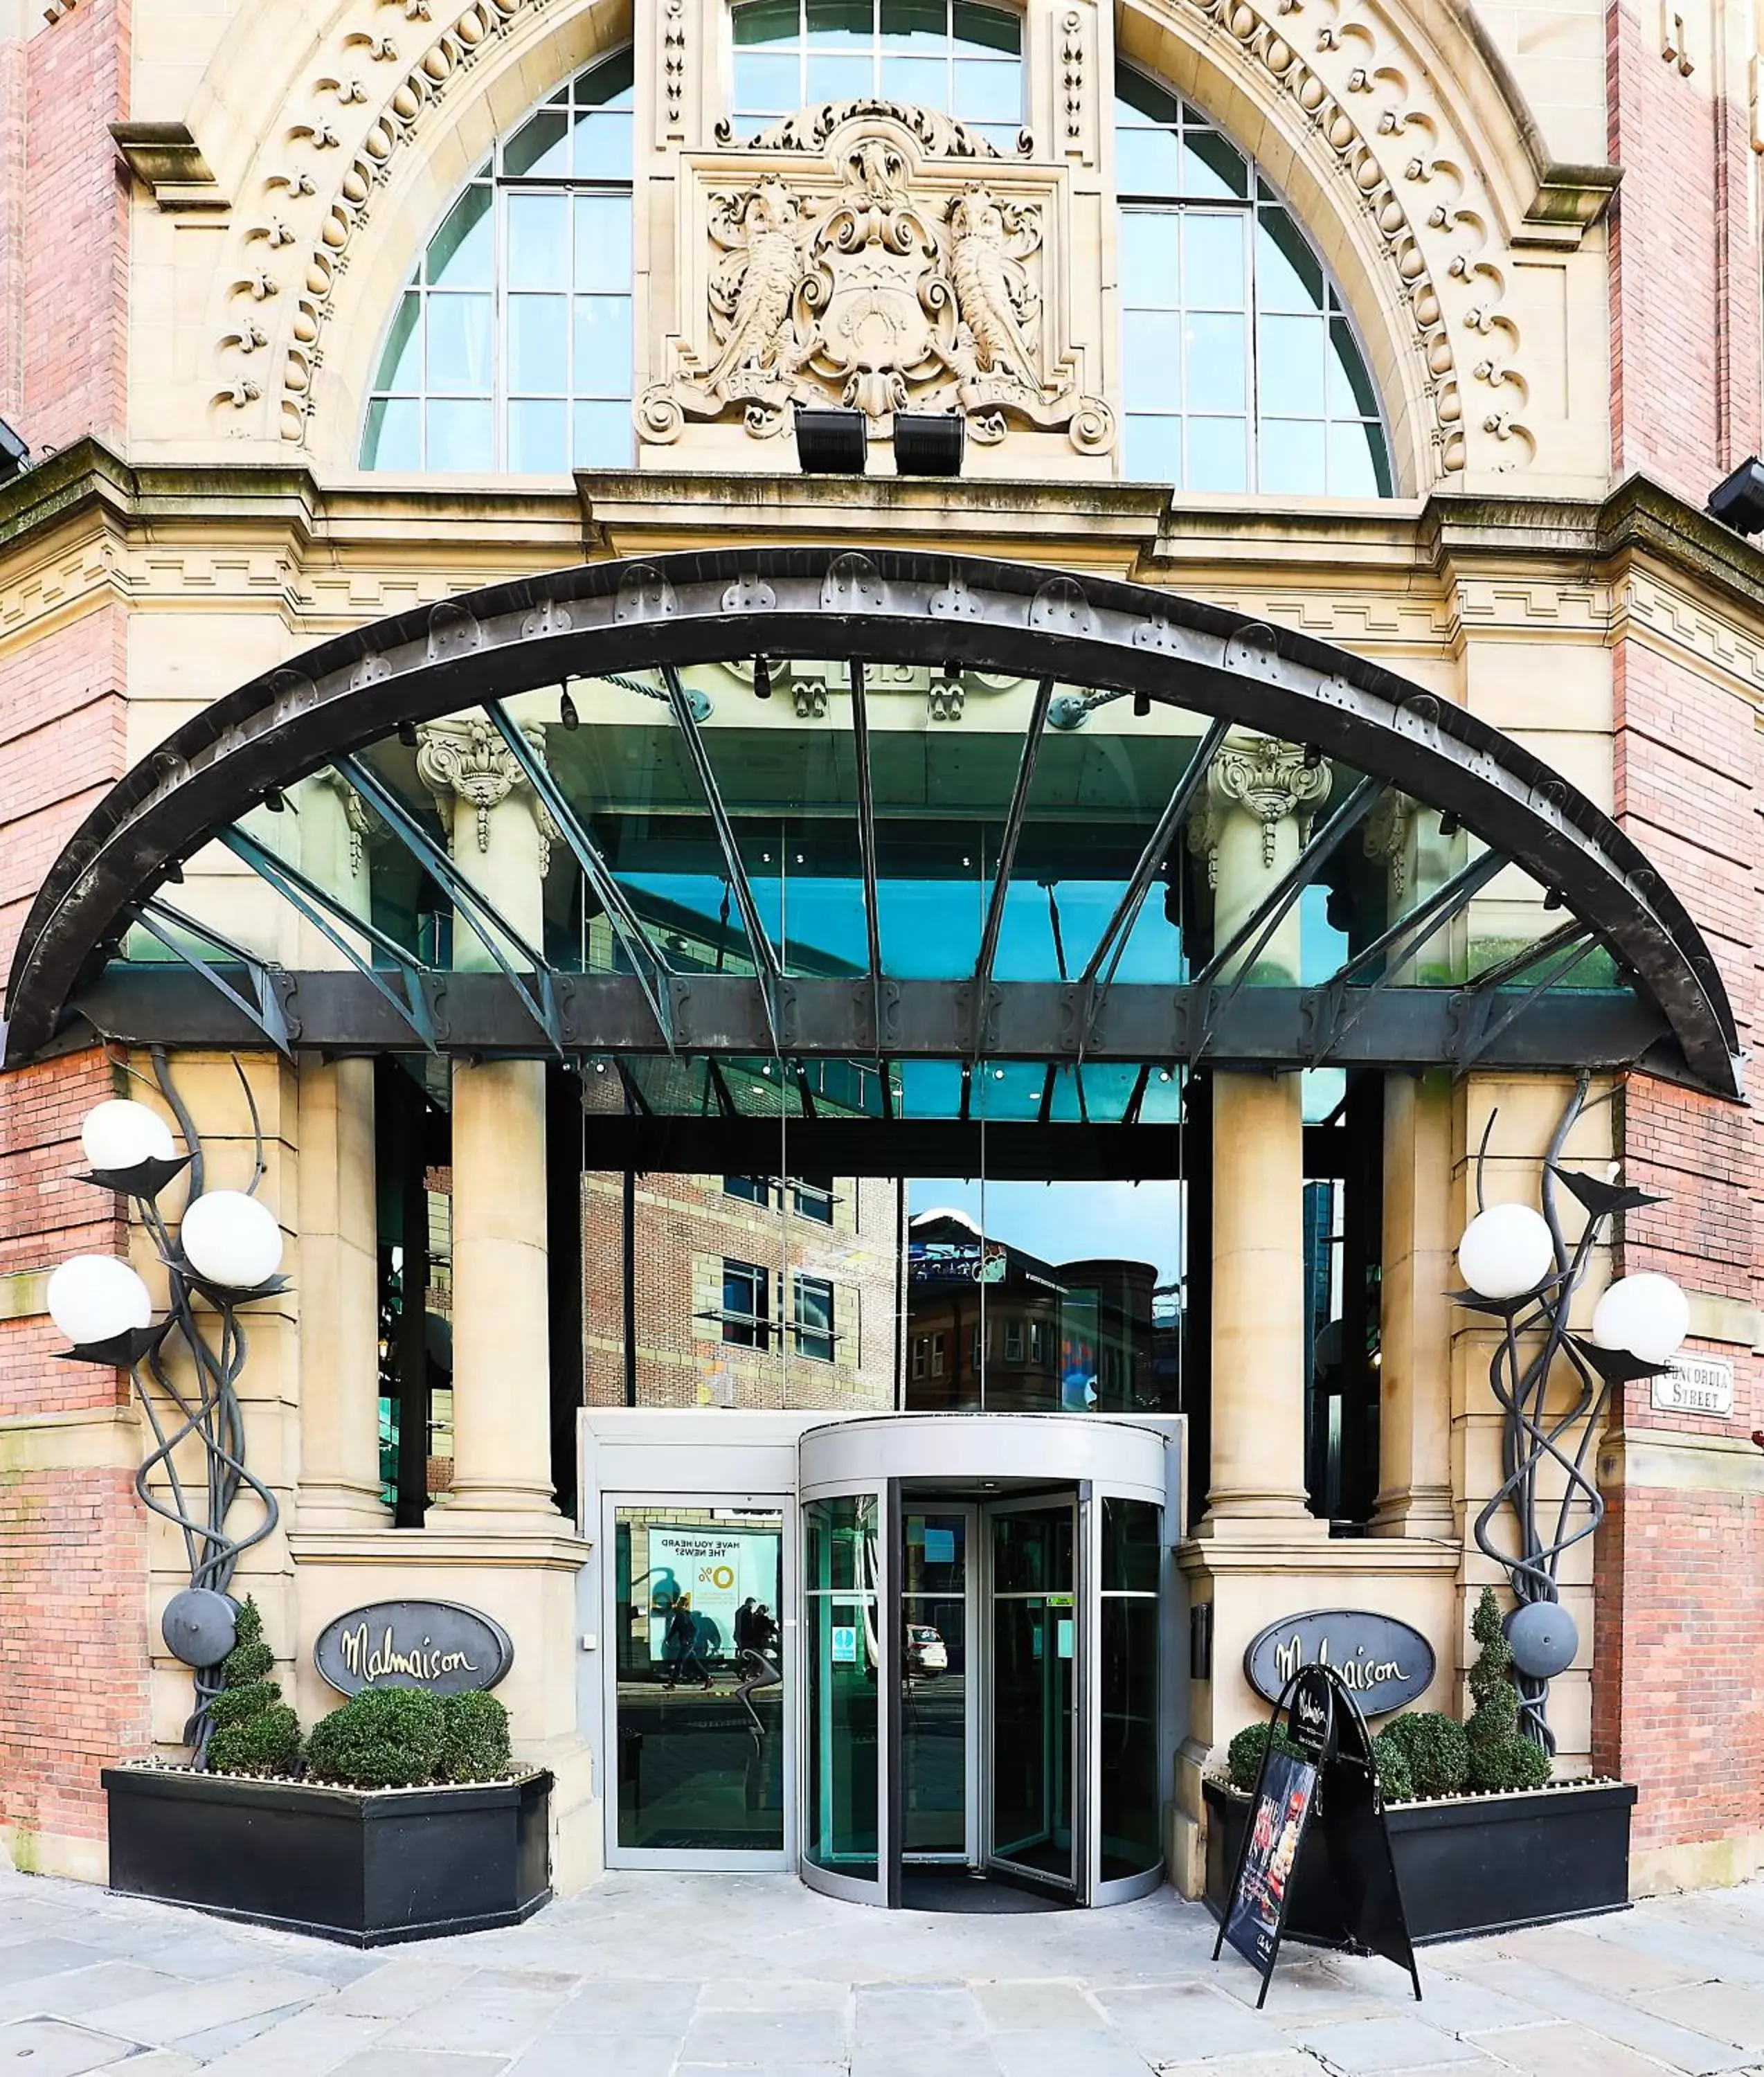 Facade/entrance in Malmaison Hotel Leeds